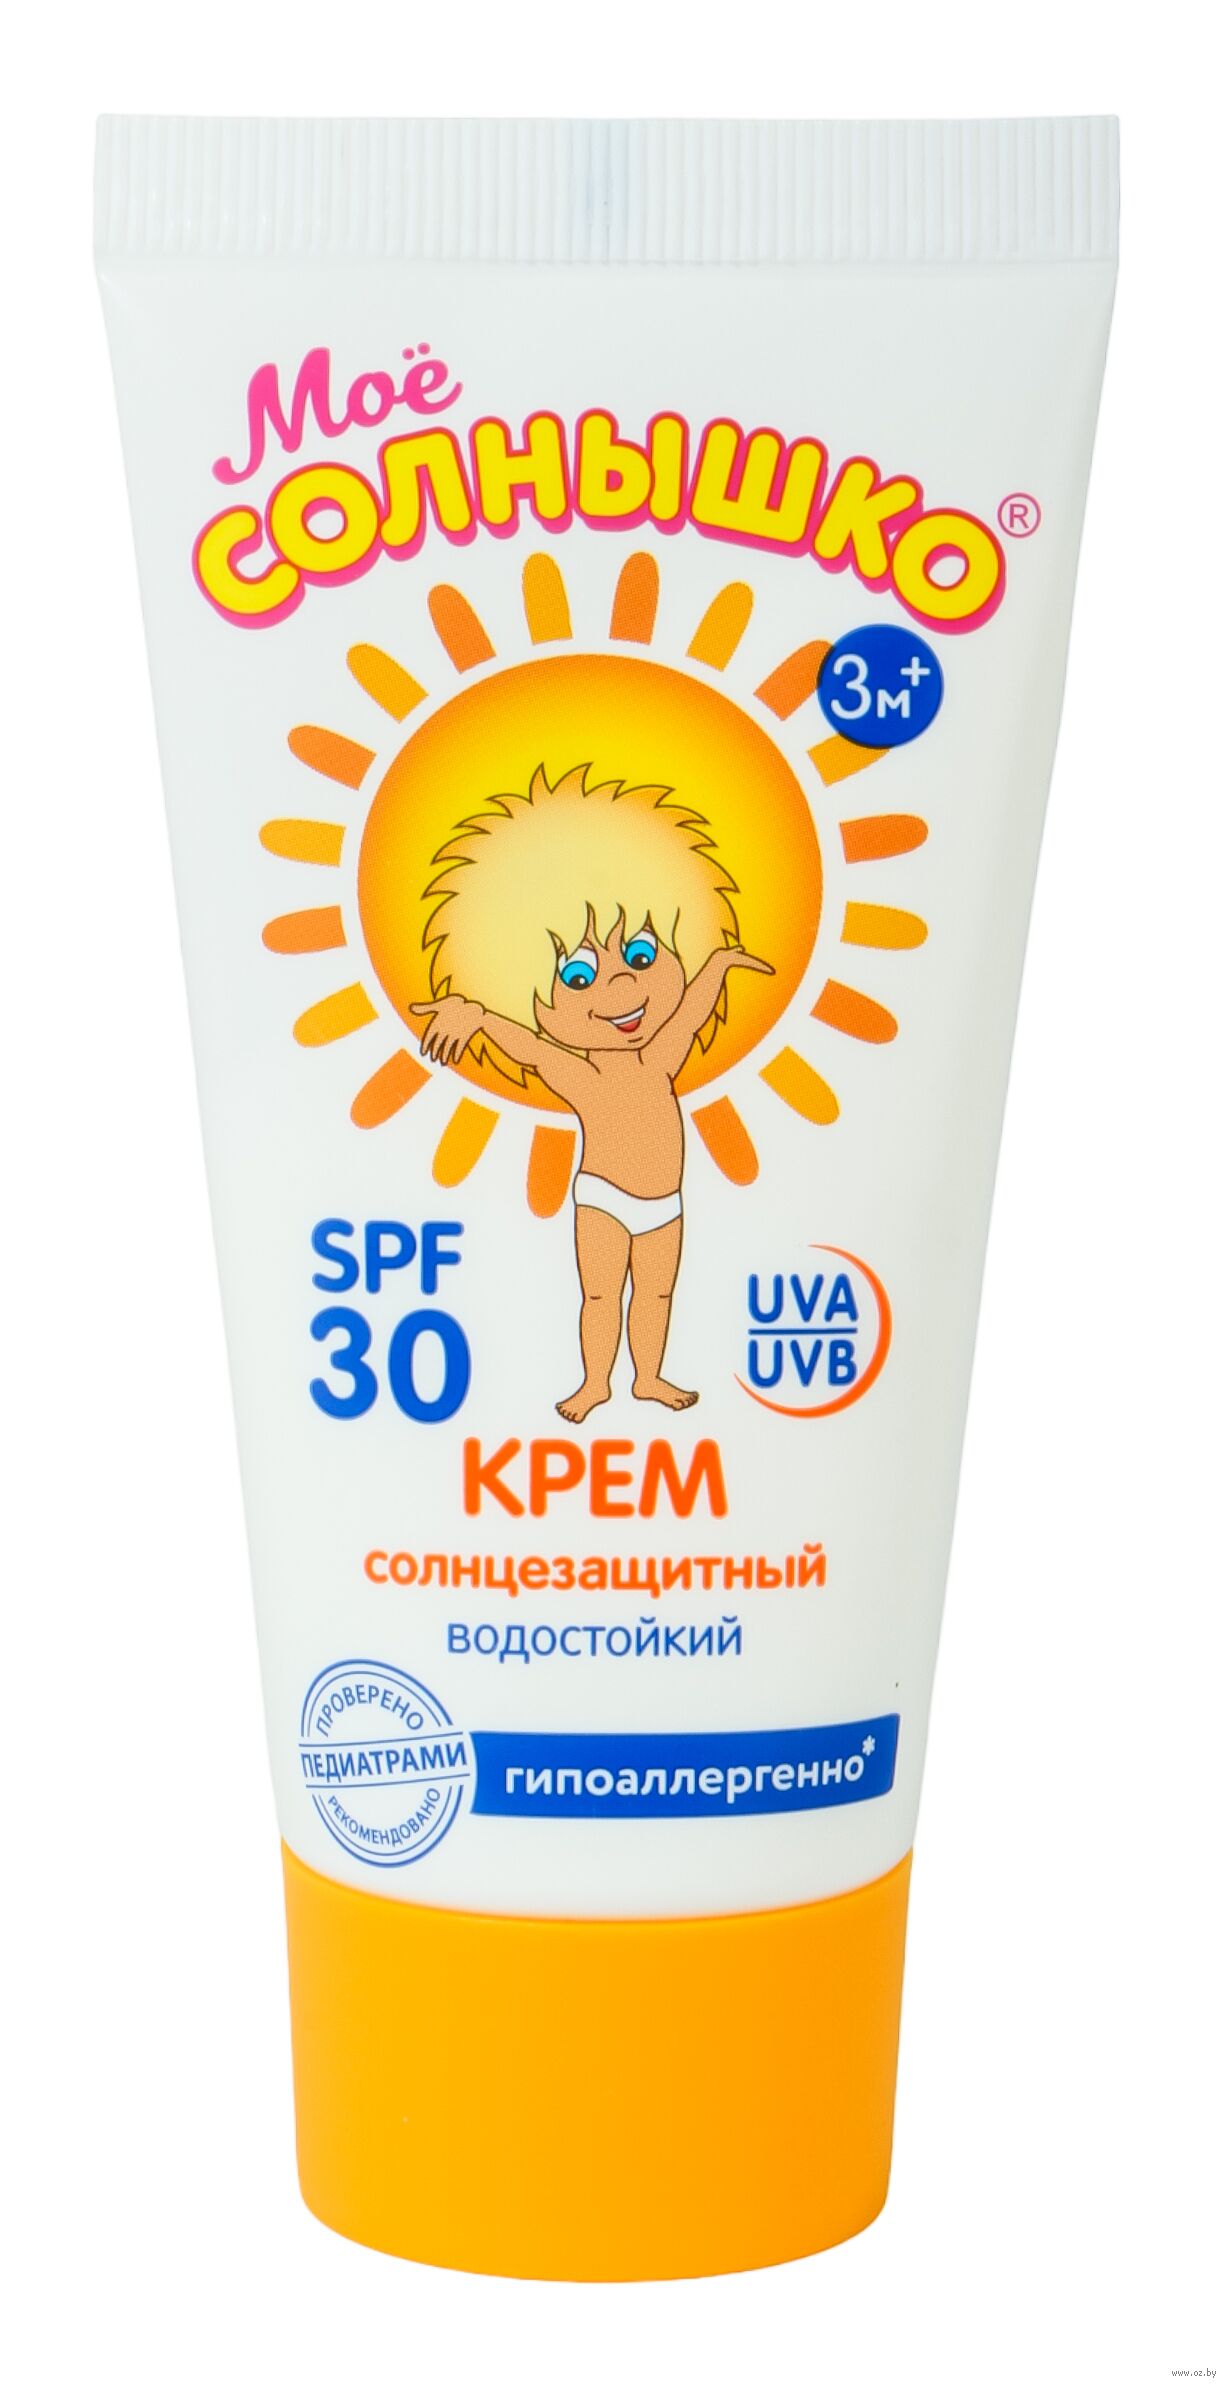 Солнцезащитный крем spf для детей. Моё солнышко детский солнцезащитный крем SPF 50. Мое солнышко крем детский солнцезащитный, SPF-30 / SPF-50, 55 мл. Мое солнышко крем солнцезащитный SPF 50. Моё солнышко детский солнцезащитный крем SPF 50 55 мл.